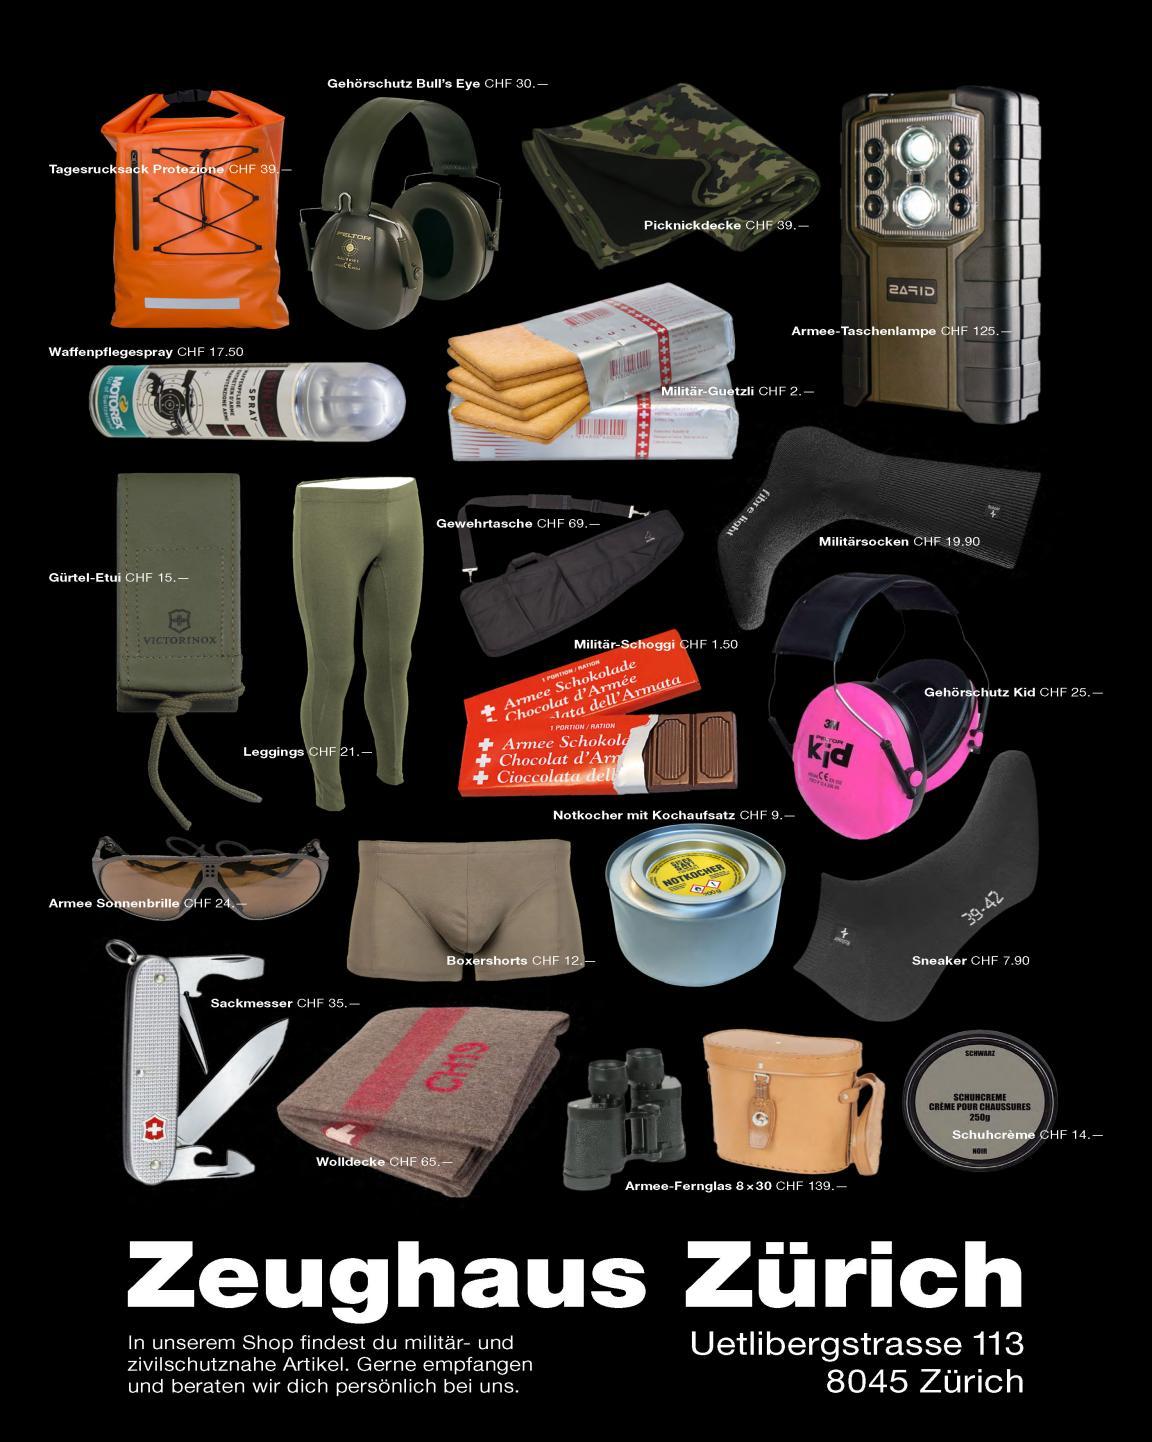 Dieses Bild bietet einen Einblick in das Sortiment des Zeughauses Zürich